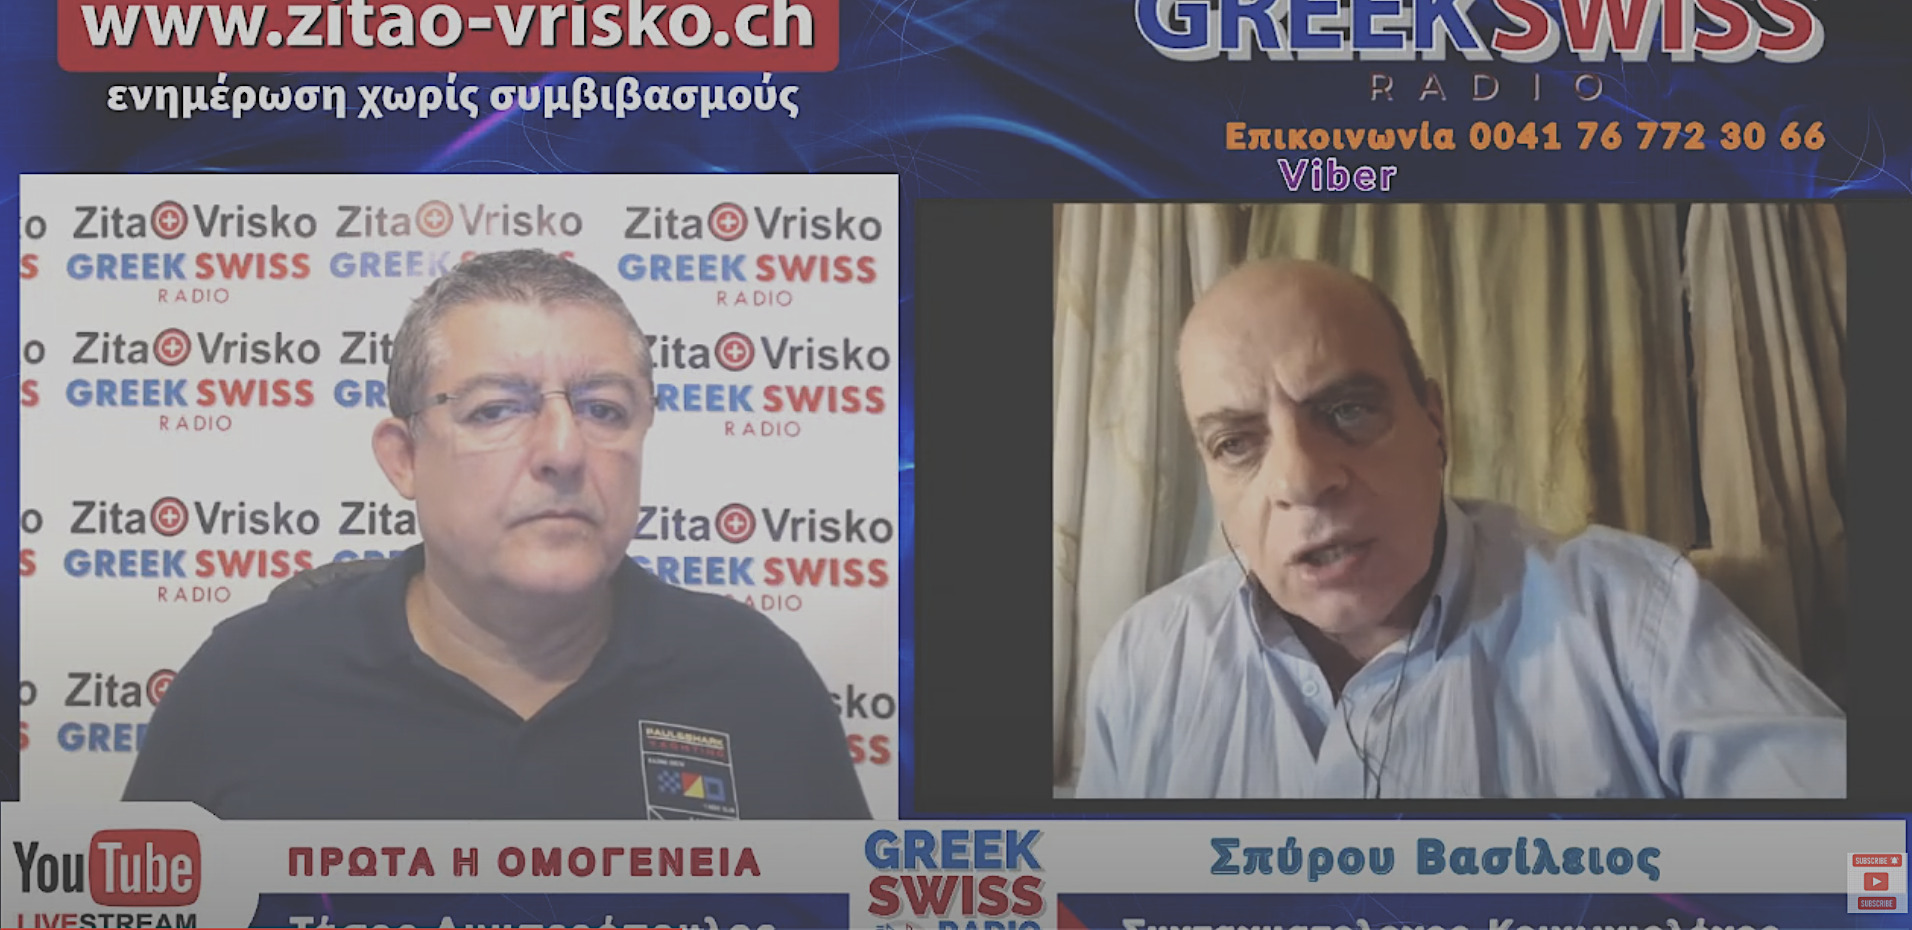 Βασίλειος Σπύρου :”Γενοκτονία των Ελλήνων” Οι ξενόφερτοι πολιτικοί σκοπεύουν την διάλυση της Ελλάδας